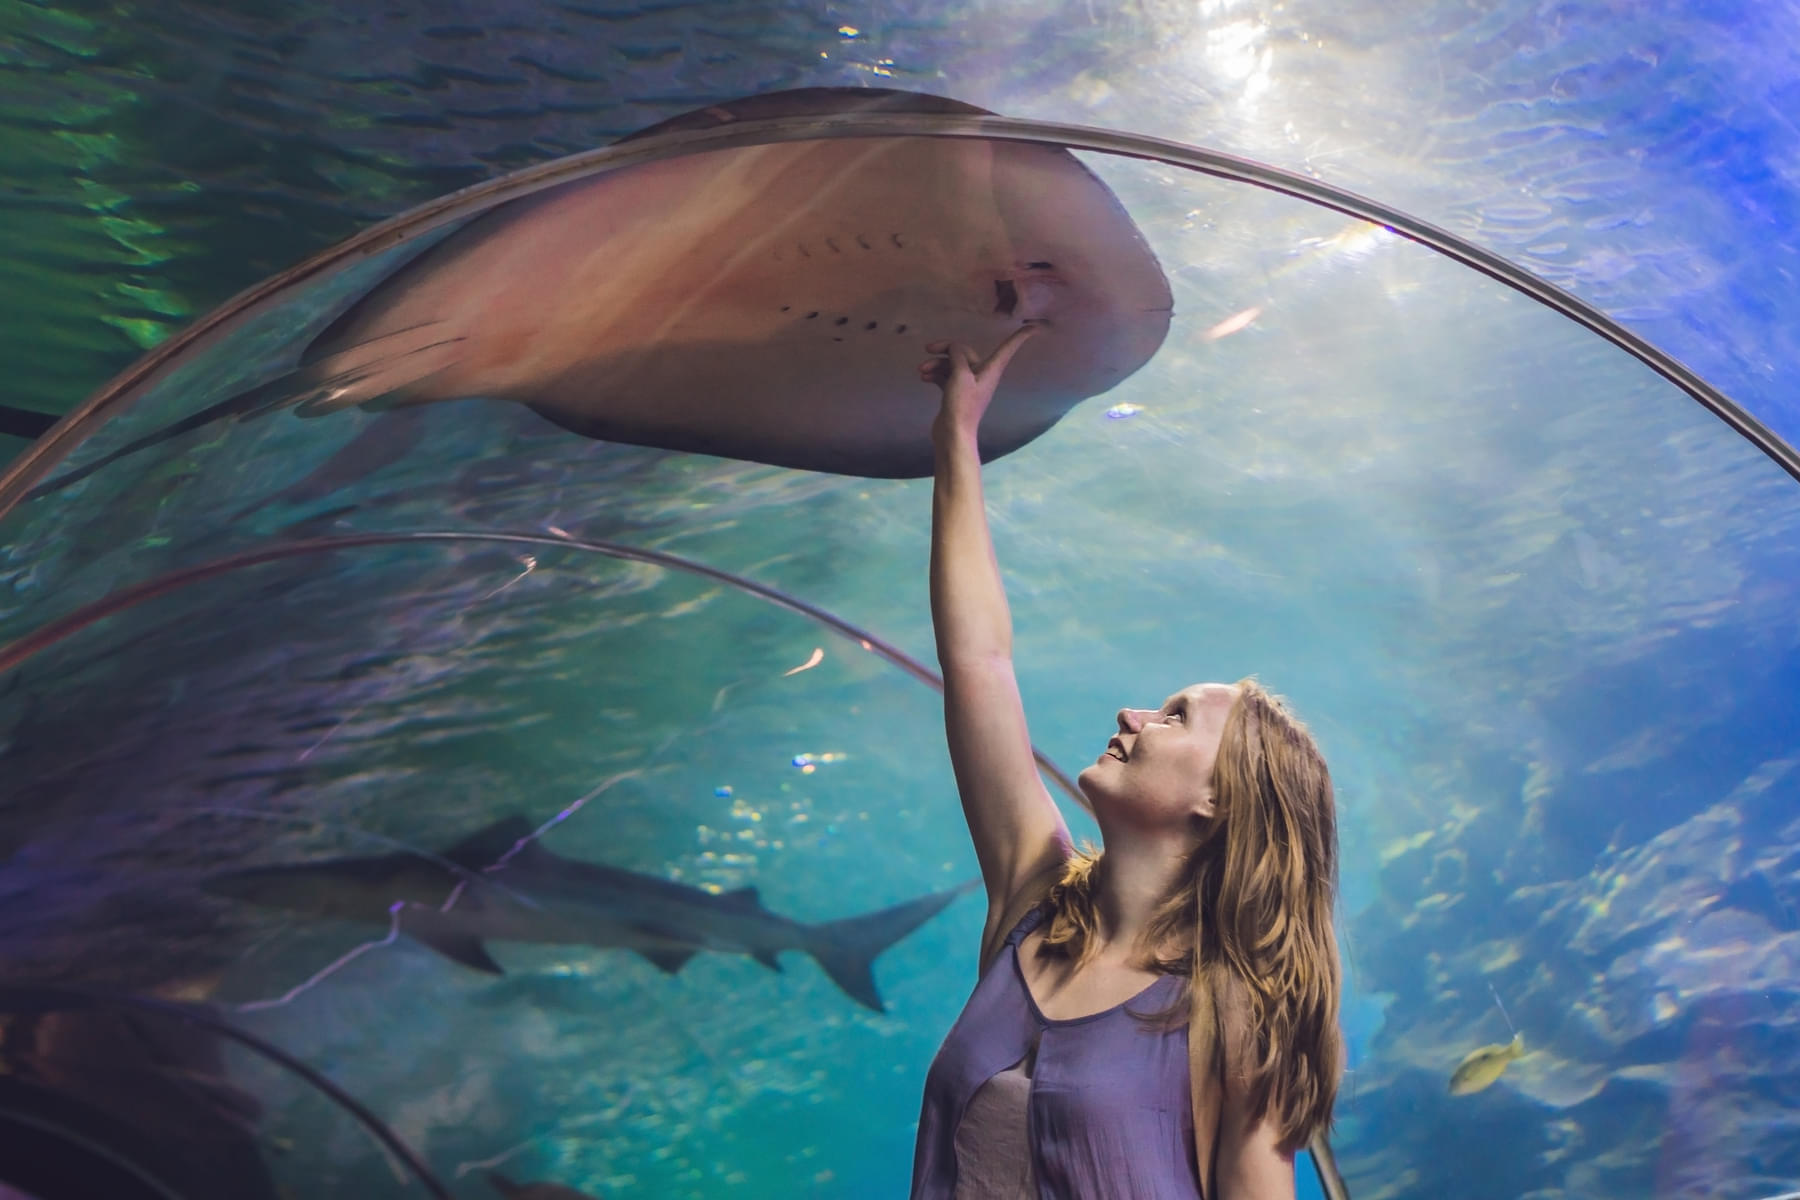 Explore the majestic Dubai Aquarium